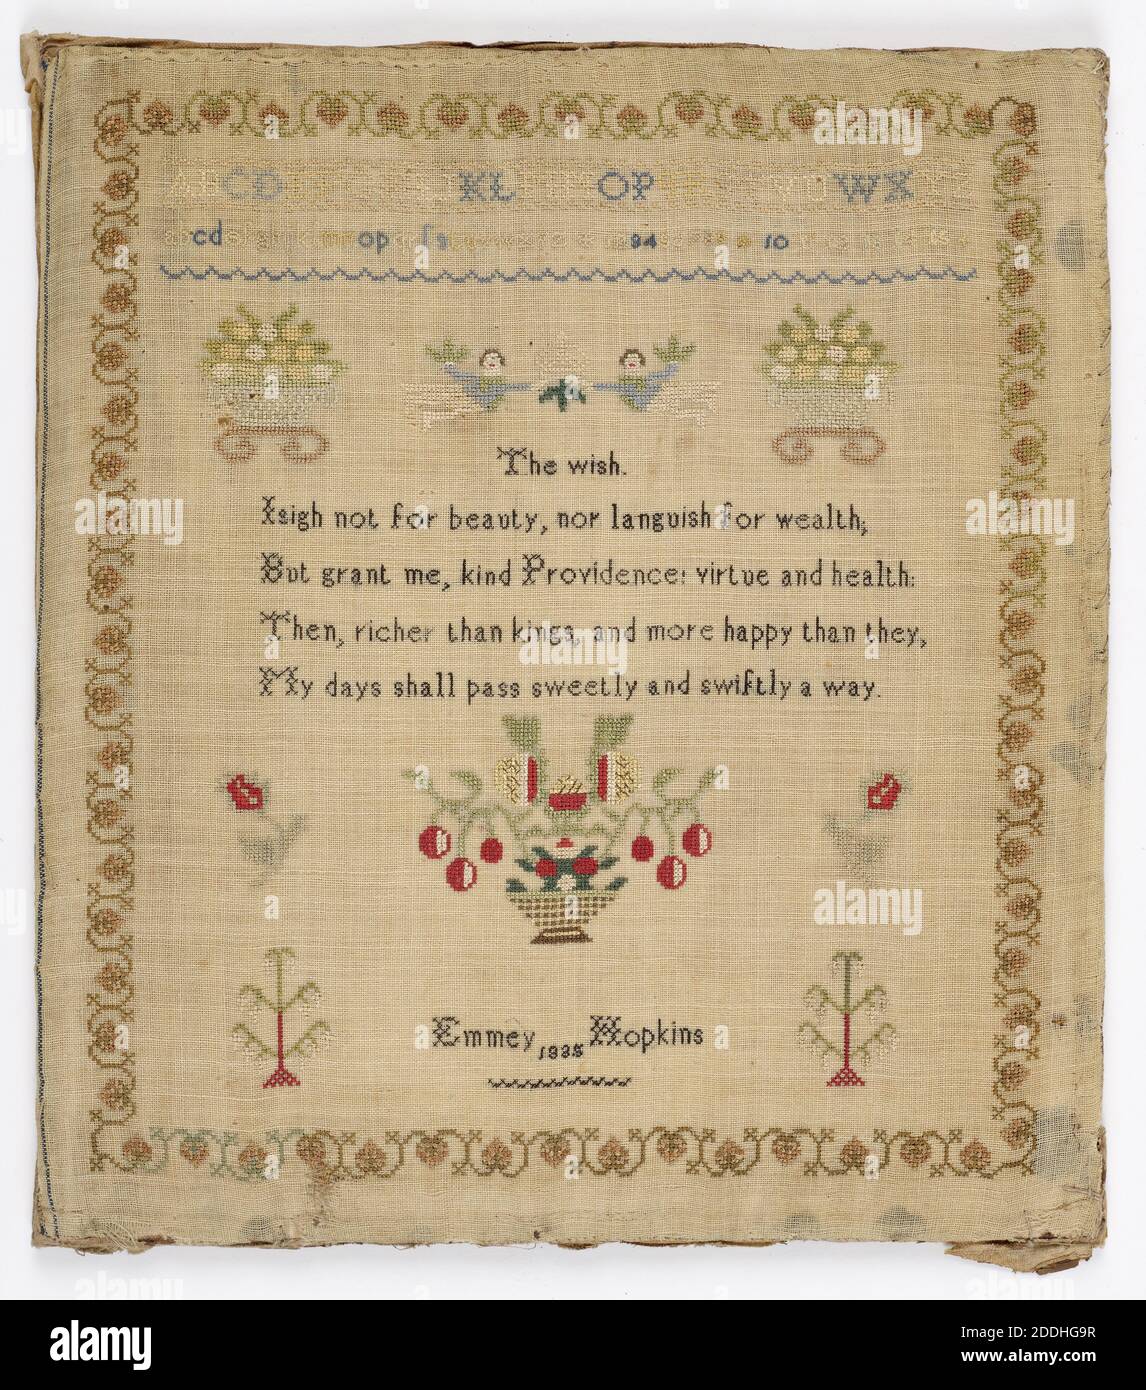 Sampler de travaux d'aiguille, Stitched by Emmey Hopkins, 1935, Arts appliqués, Histoire sociale, textiles, broderie, couture Banque D'Images